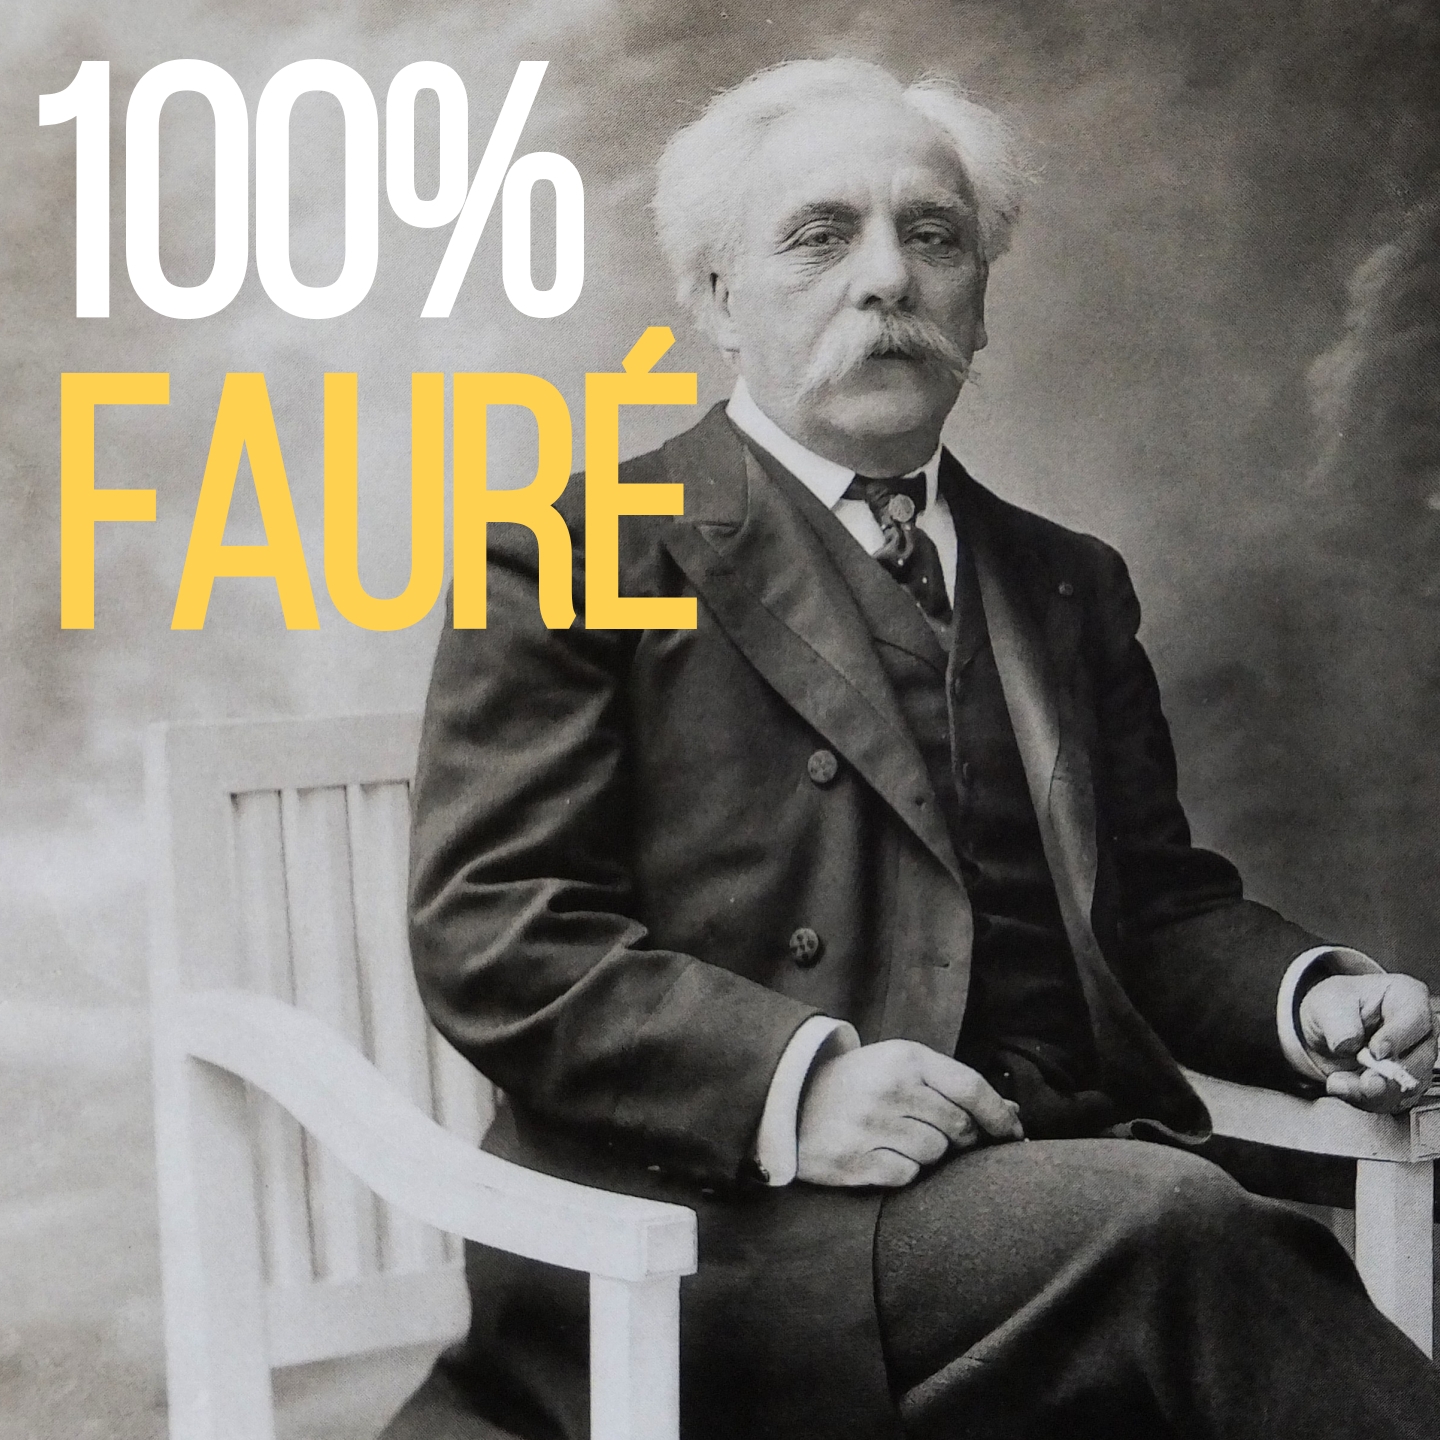 100% Fauré